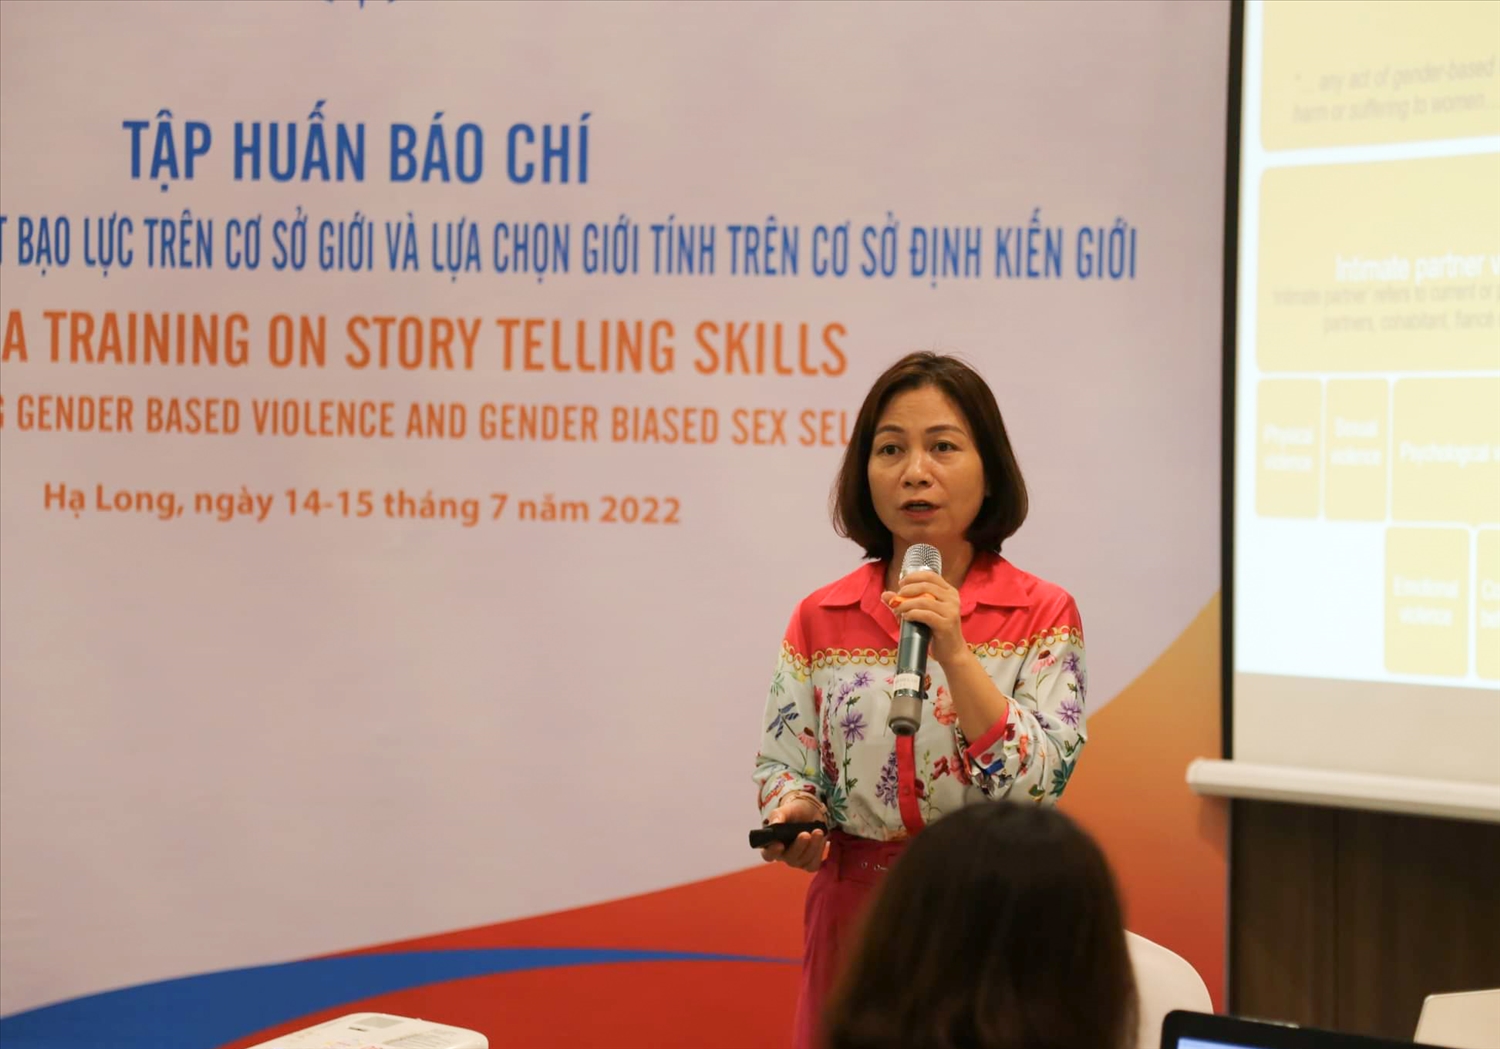 Bà Hà Thị Quỳnh Anh, Chuyên gia về giới và nhân quyền - Quỹ Dân số Liên hợp quốc (UNFPA) phát biểu tại buổi Tập huấn.